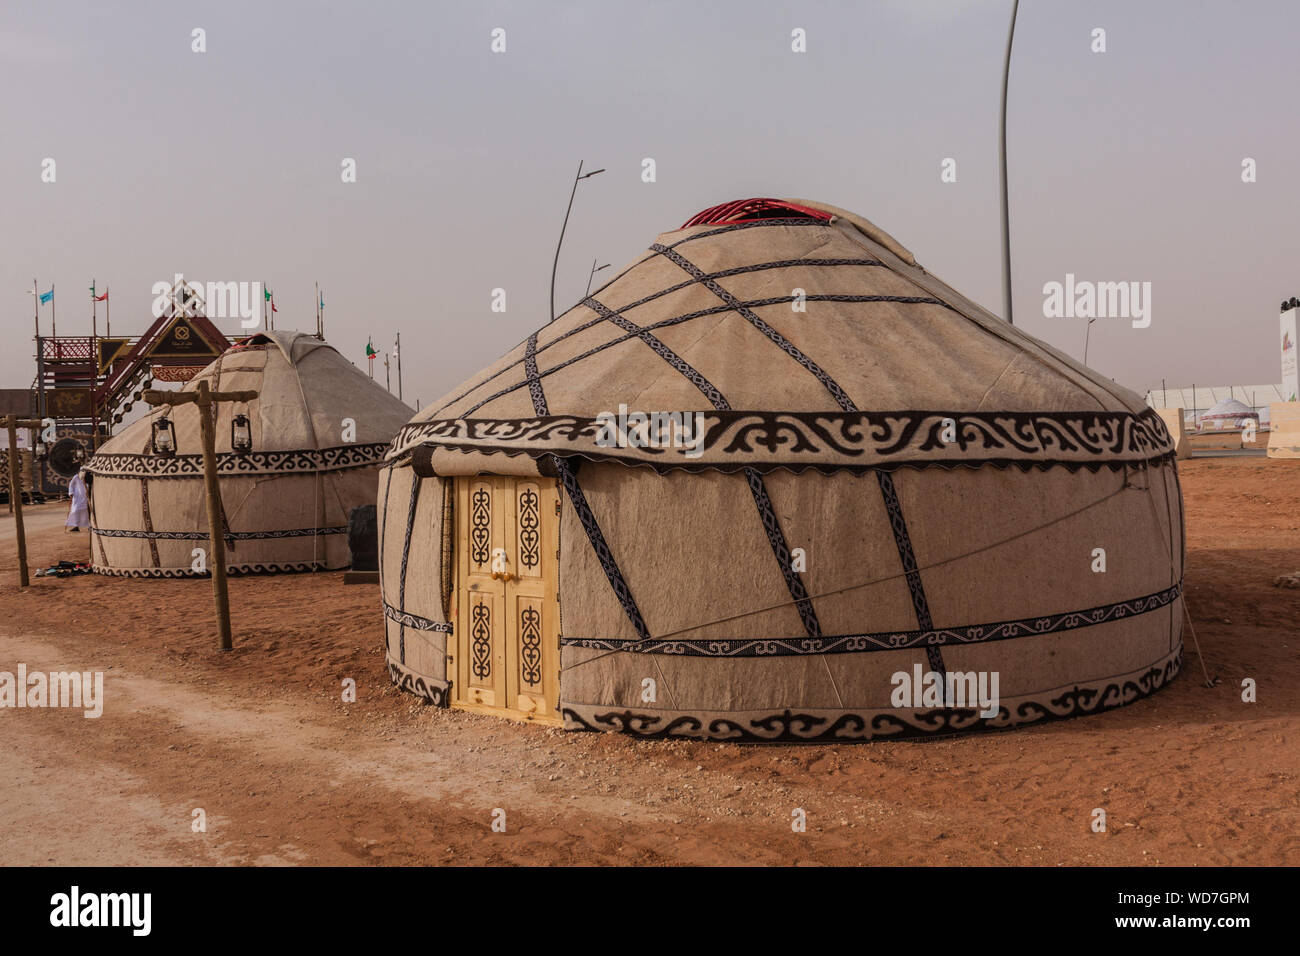 Kyrgyz yurts on the Nomadic World Show during the 2019 King Abdulaziz Camel Festival Stock Photo